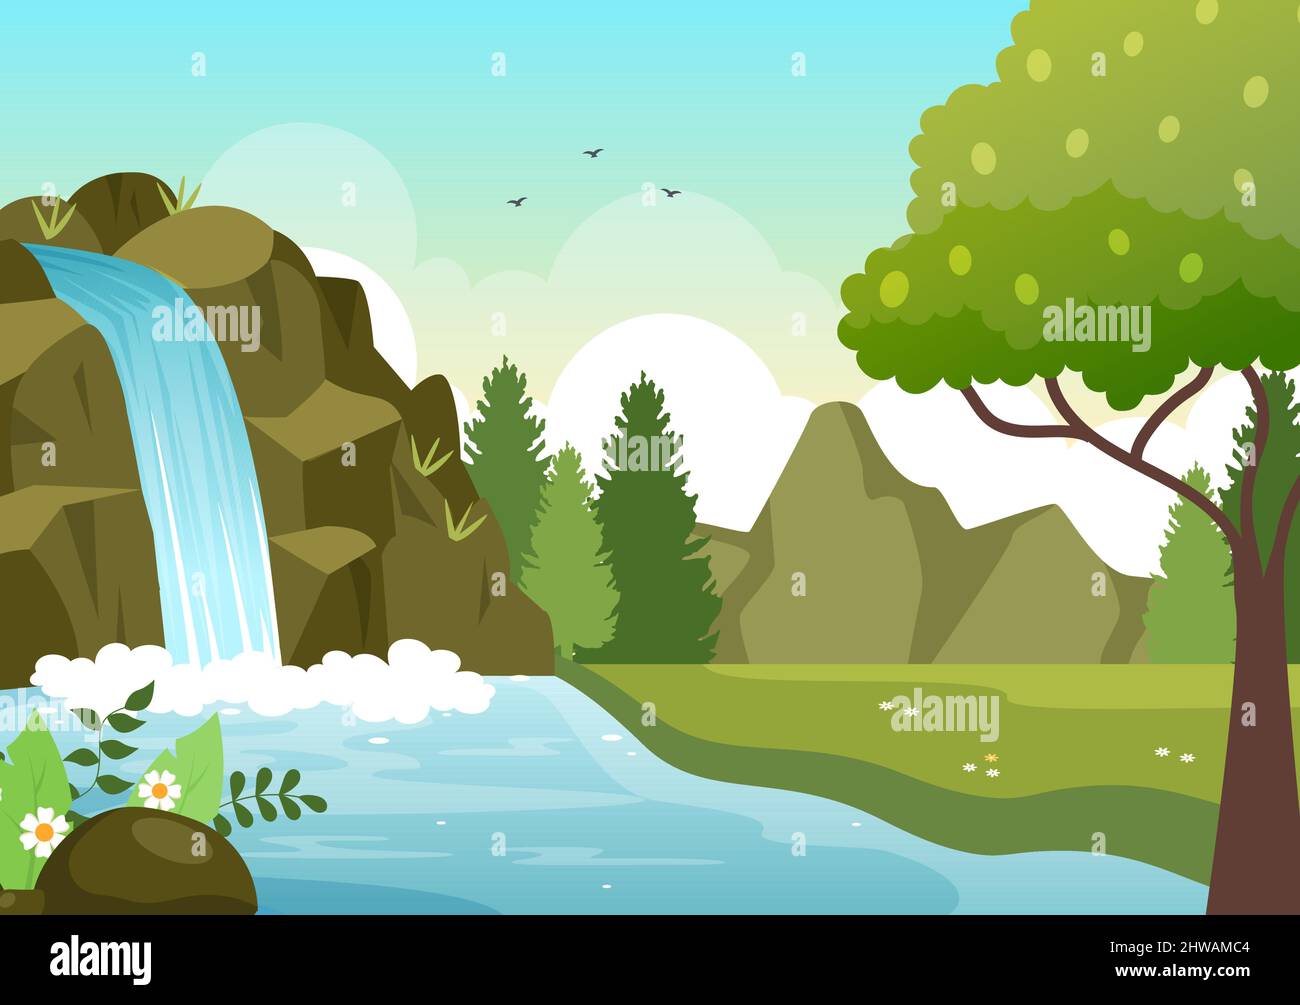 Wasserfall Dschungel Landschaft tropischer Naturlandschaft mit Kaskade von Felsen, Flussläufen oder Rocky Cliff in flachem Hintergrund Vektor-Illustration Stock Vektor